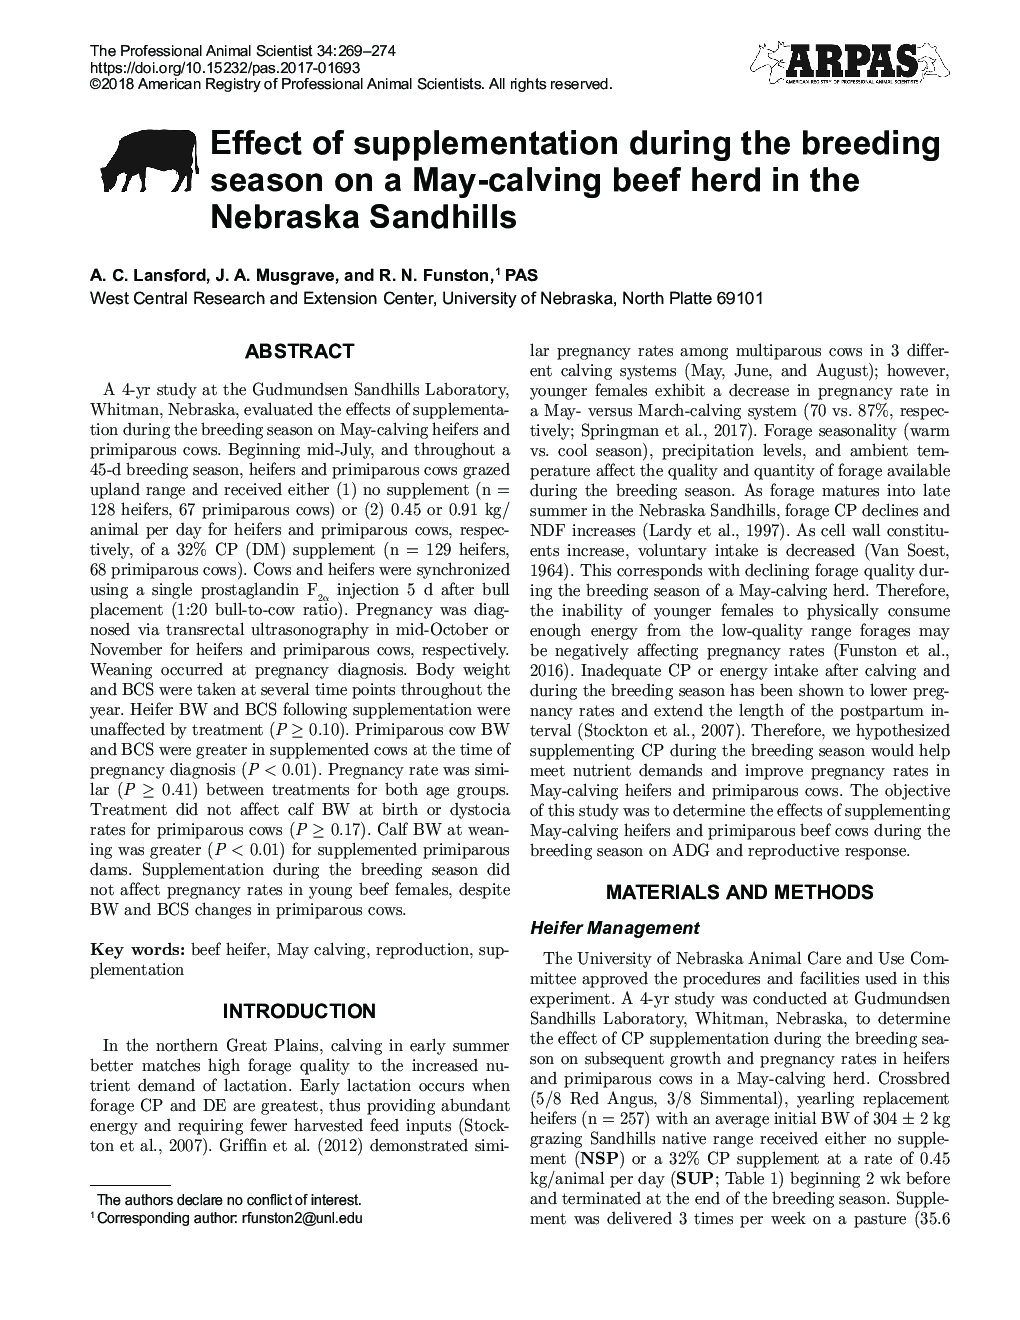 تأثیر مکمل ها در طی فصل پرورش در یک گله گوساله مهبل در ساندی هیل های نبراسکا 